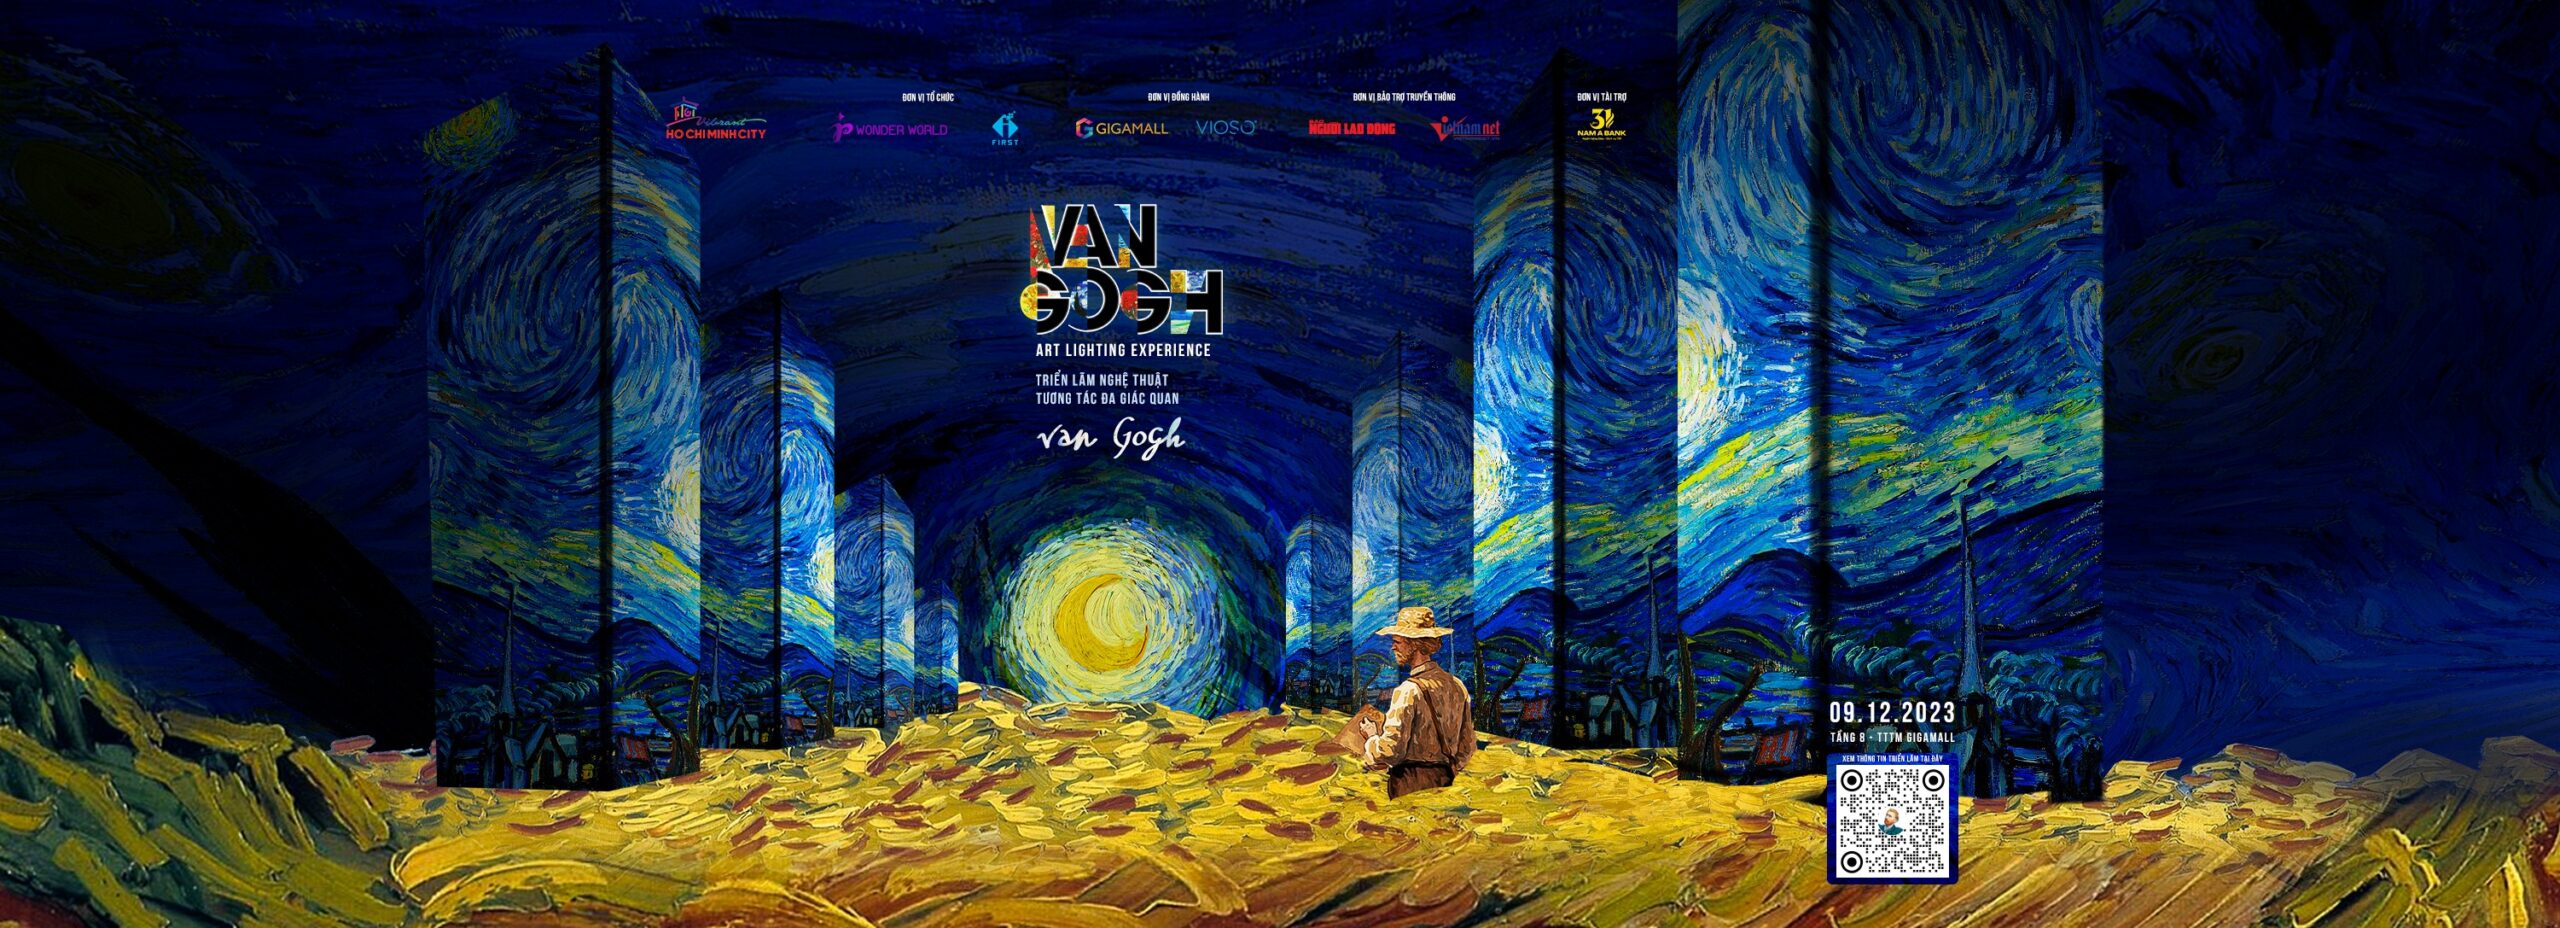 Triển lãm Van Gogh – nghệ thuật tương tác đa giác quan sắp diễn ra tại Việt Nam